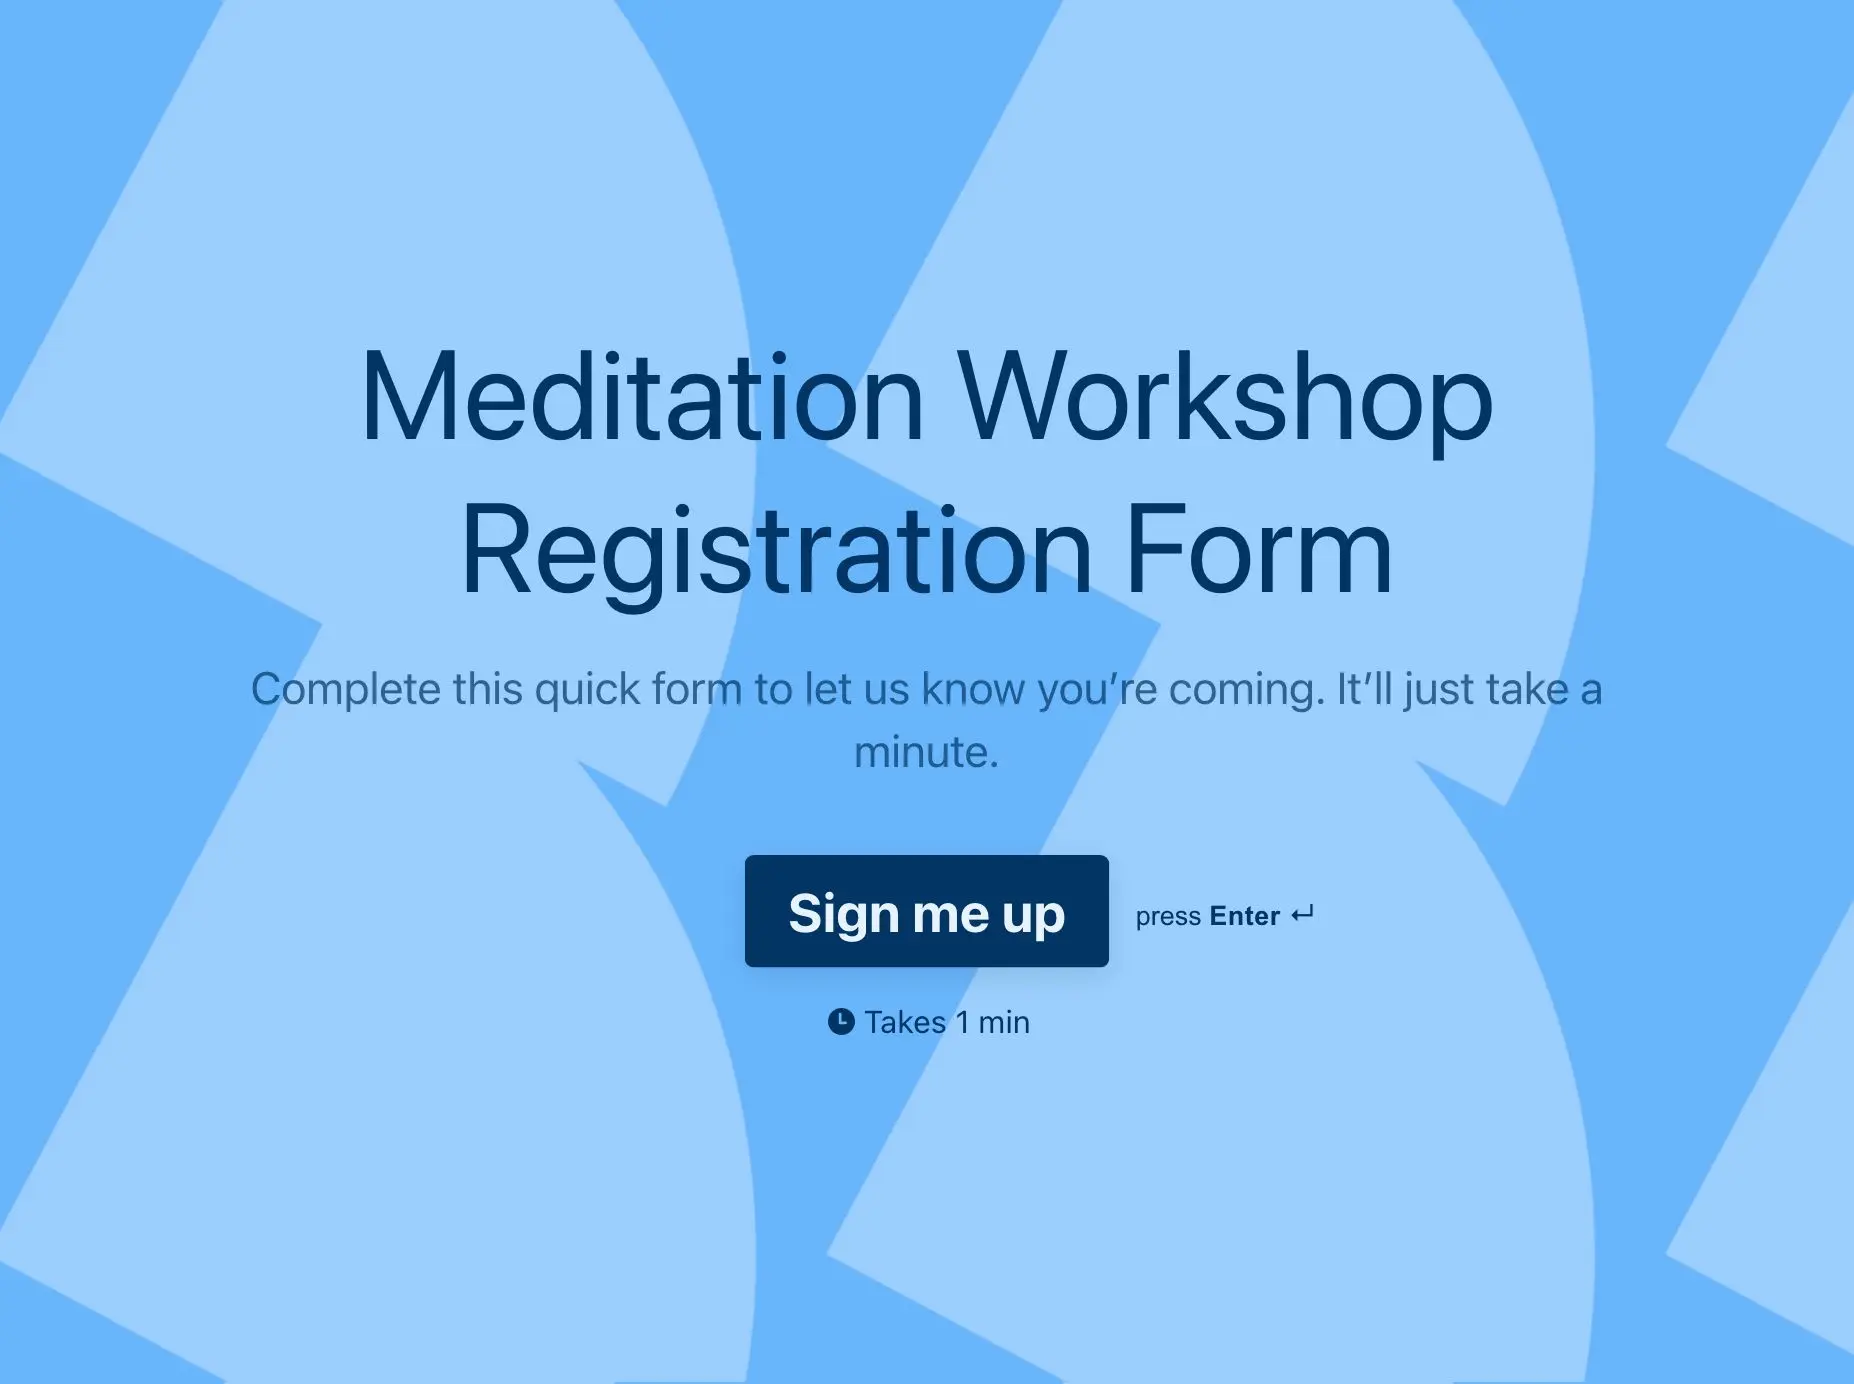 Meditation Workshop Registration Form Template Hero